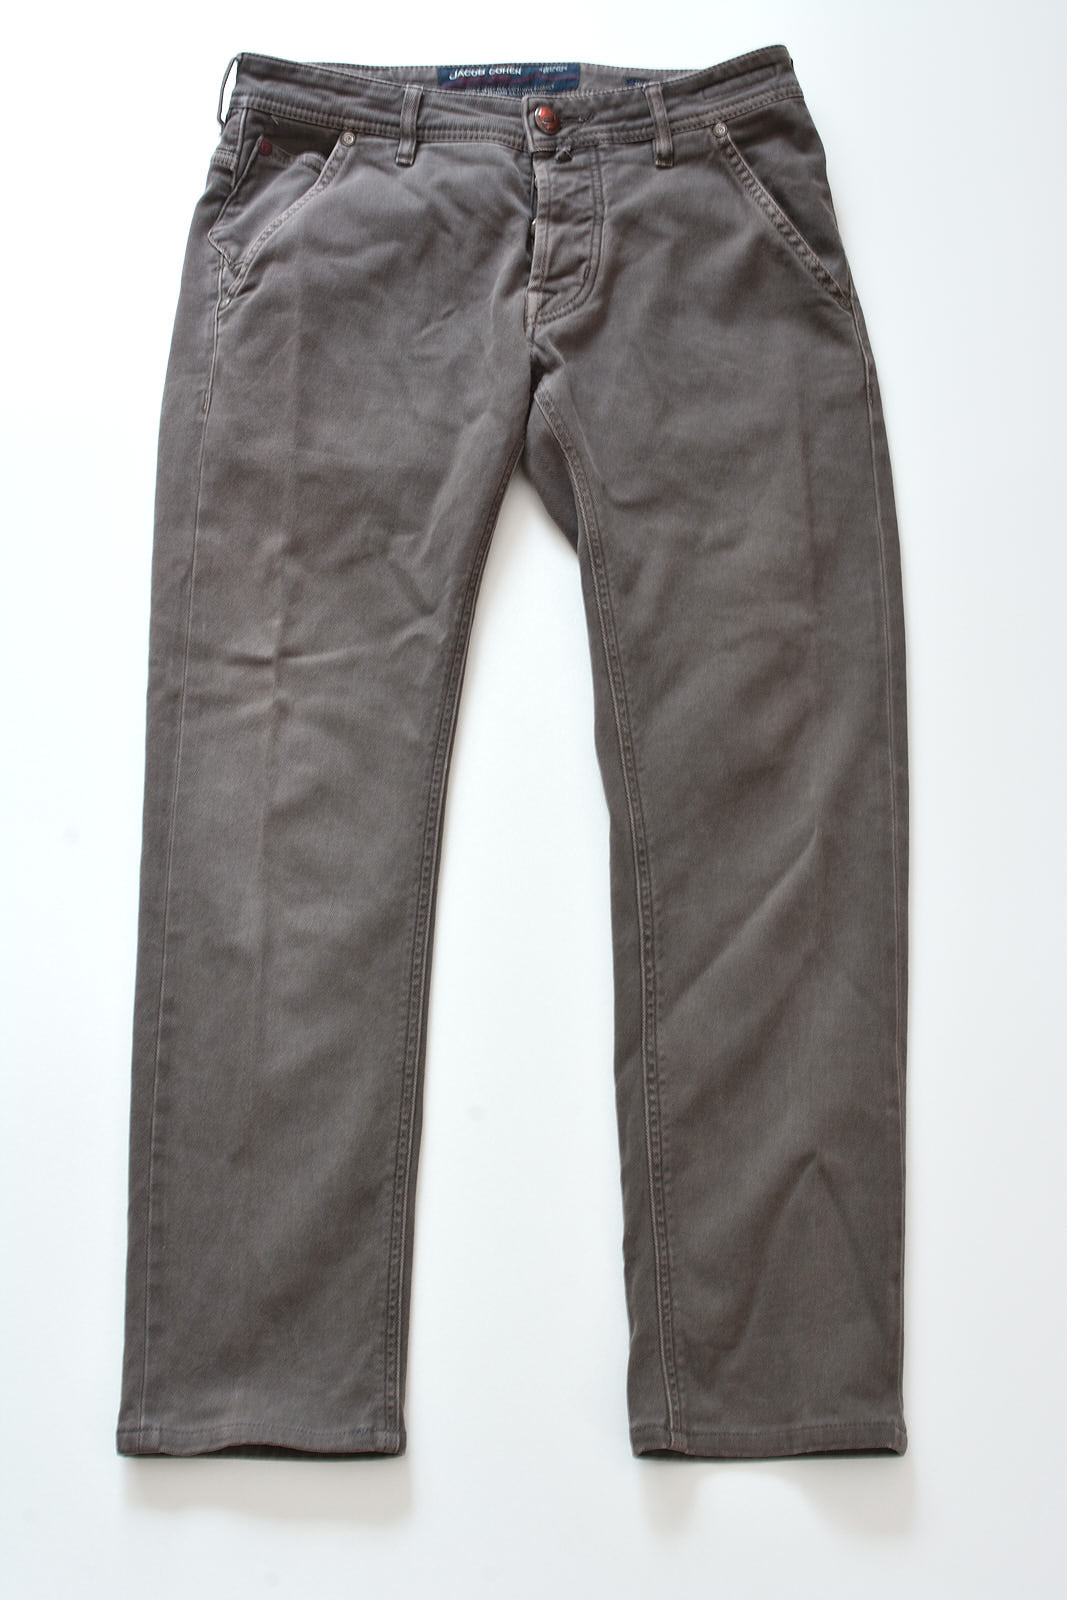 JACOB COHEN J688 Comfort Vintage Gray Cotton Stretch Slim Fit Jeans Pants US 32 JACOB COHEN